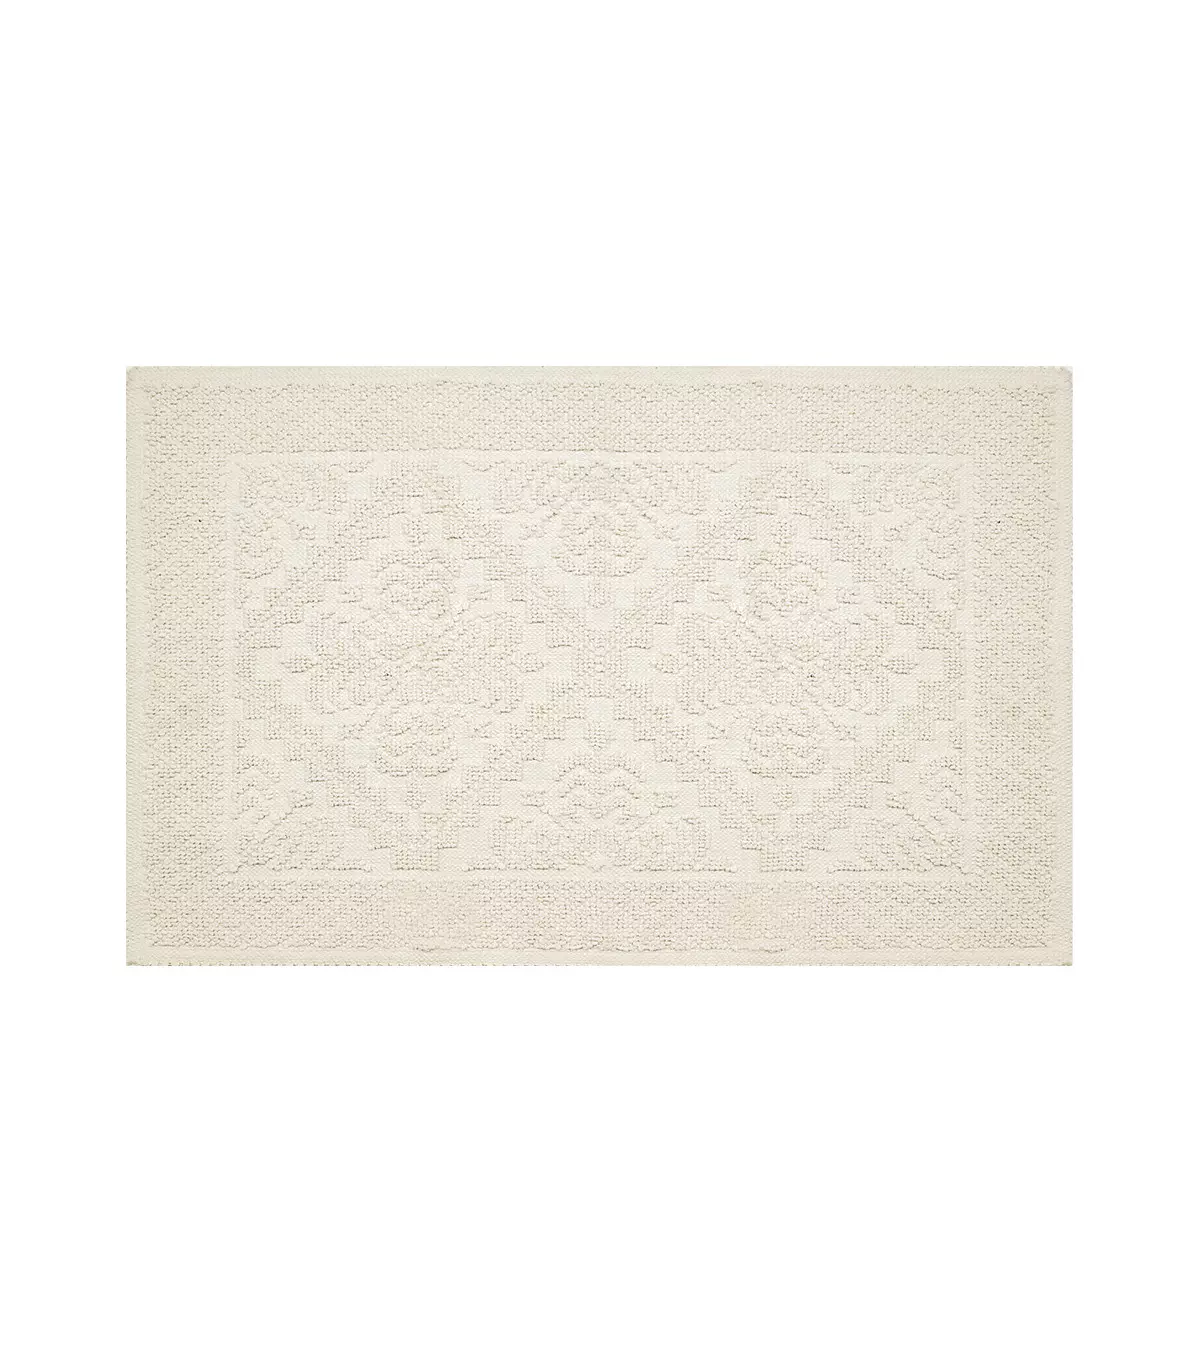 Sardinian cotton carpet, Sardinian carpets of various sizes